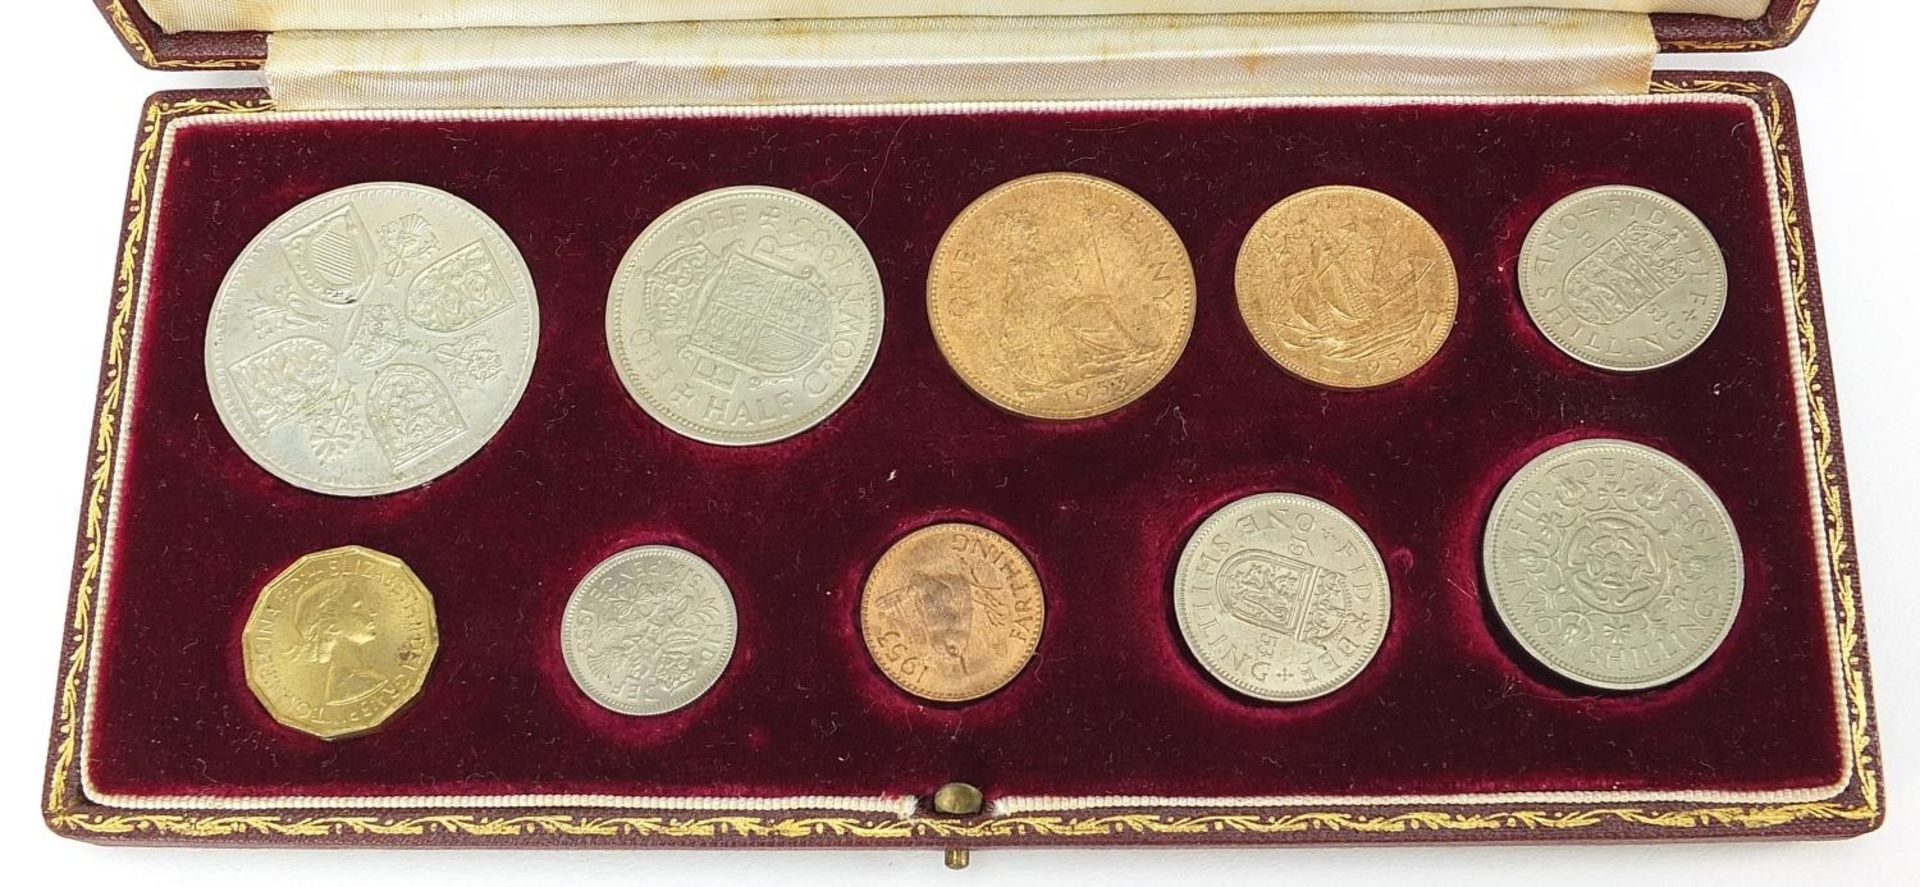 Elizabeth II 1953 specimen coin set housed in a velvet lined tooled leather case, 20cm wide - Image 4 of 5